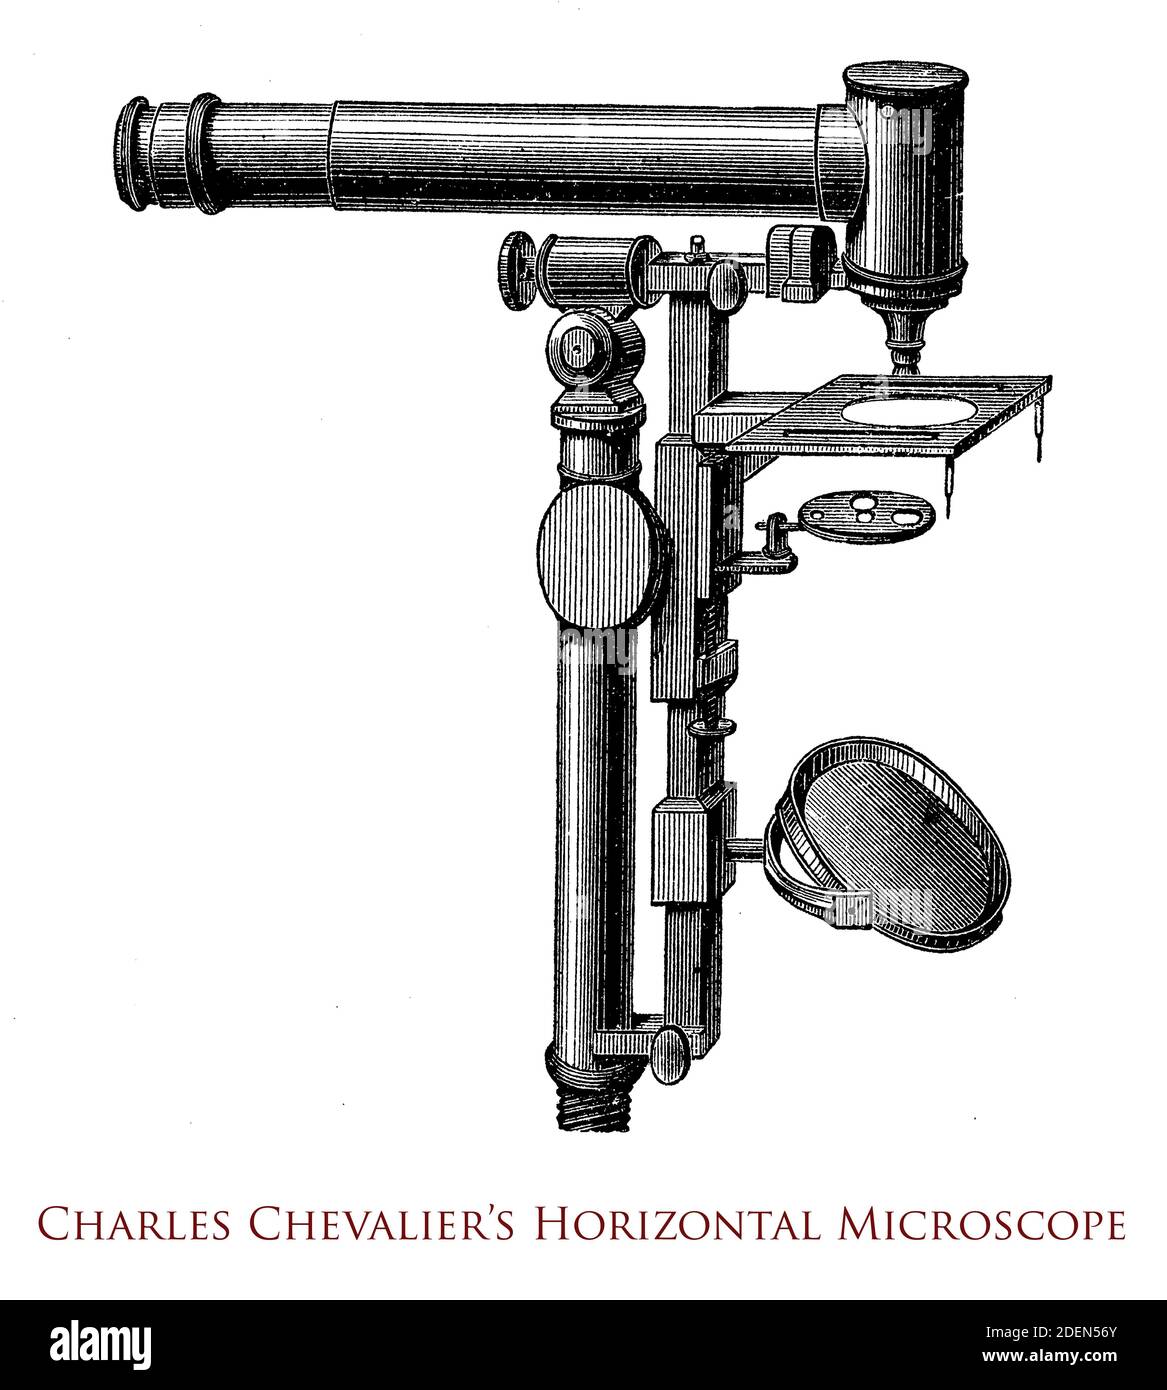 Microscopio orizzontale di Charles Chevalier senza ottica riflettente e con un obiettivo acromatico, sviluppato nel 1834 a Parigi - Francia Foto Stock